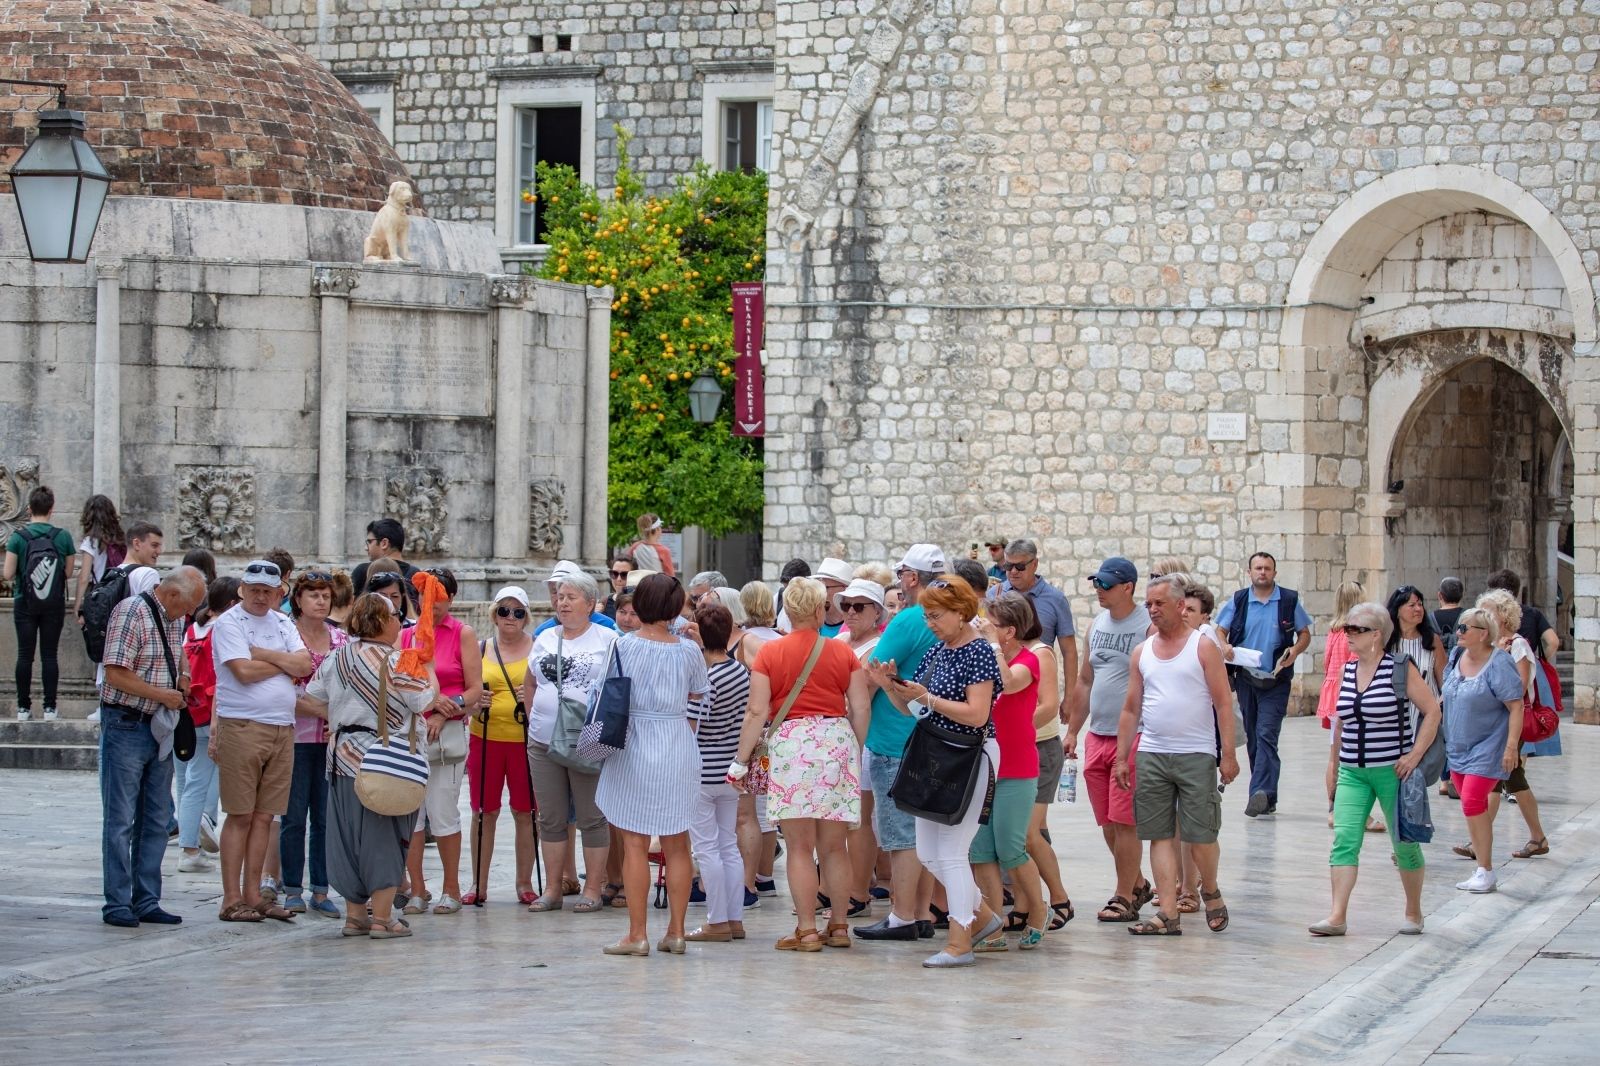 09.06.2021., Stara gradska jezgra, Dubrovnik - Prava ljetna atmosfera u gradu, velike grupe turista u razgledavanju  grada.
Photo: Grgo Jelavic/PIXSELL